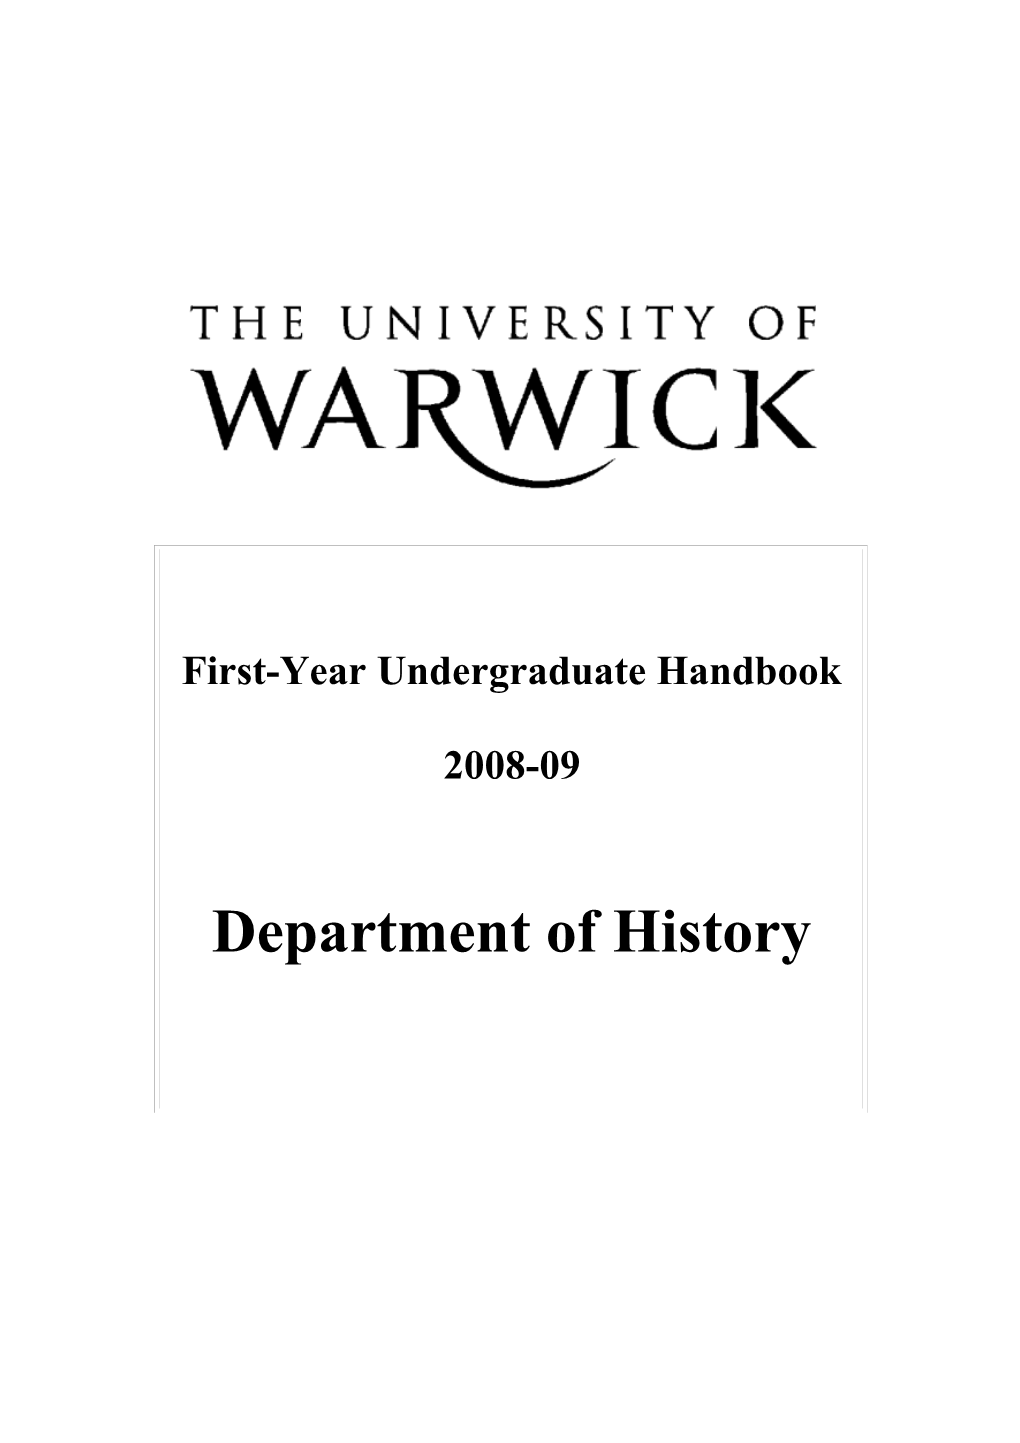 First-Year Undergraduate Handbook